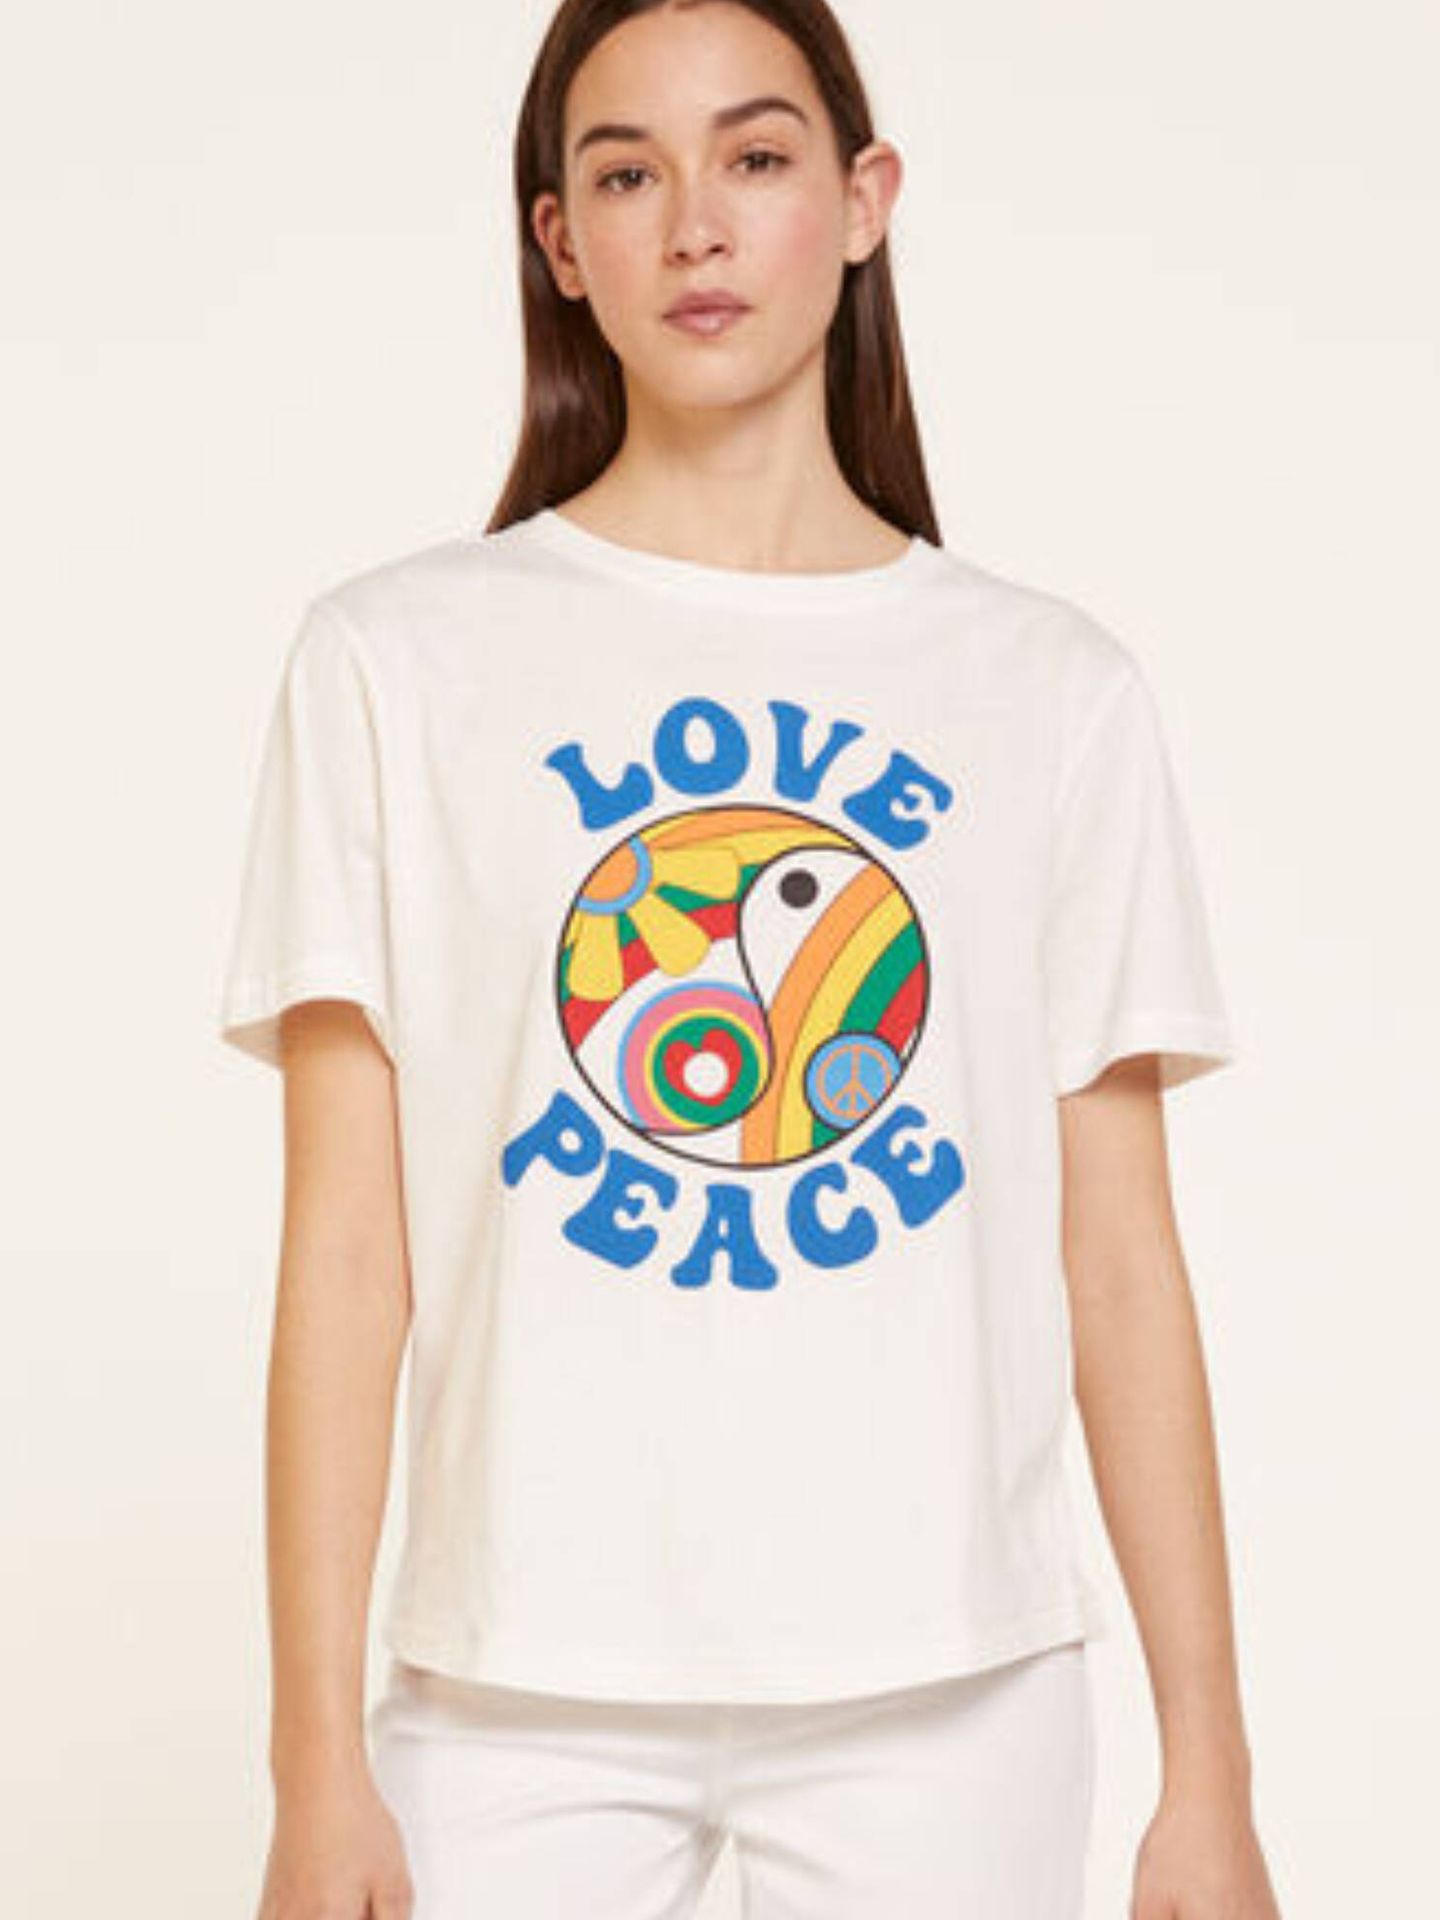 Estilo flower power con esta camiseta de Springfield. (Cortesía)